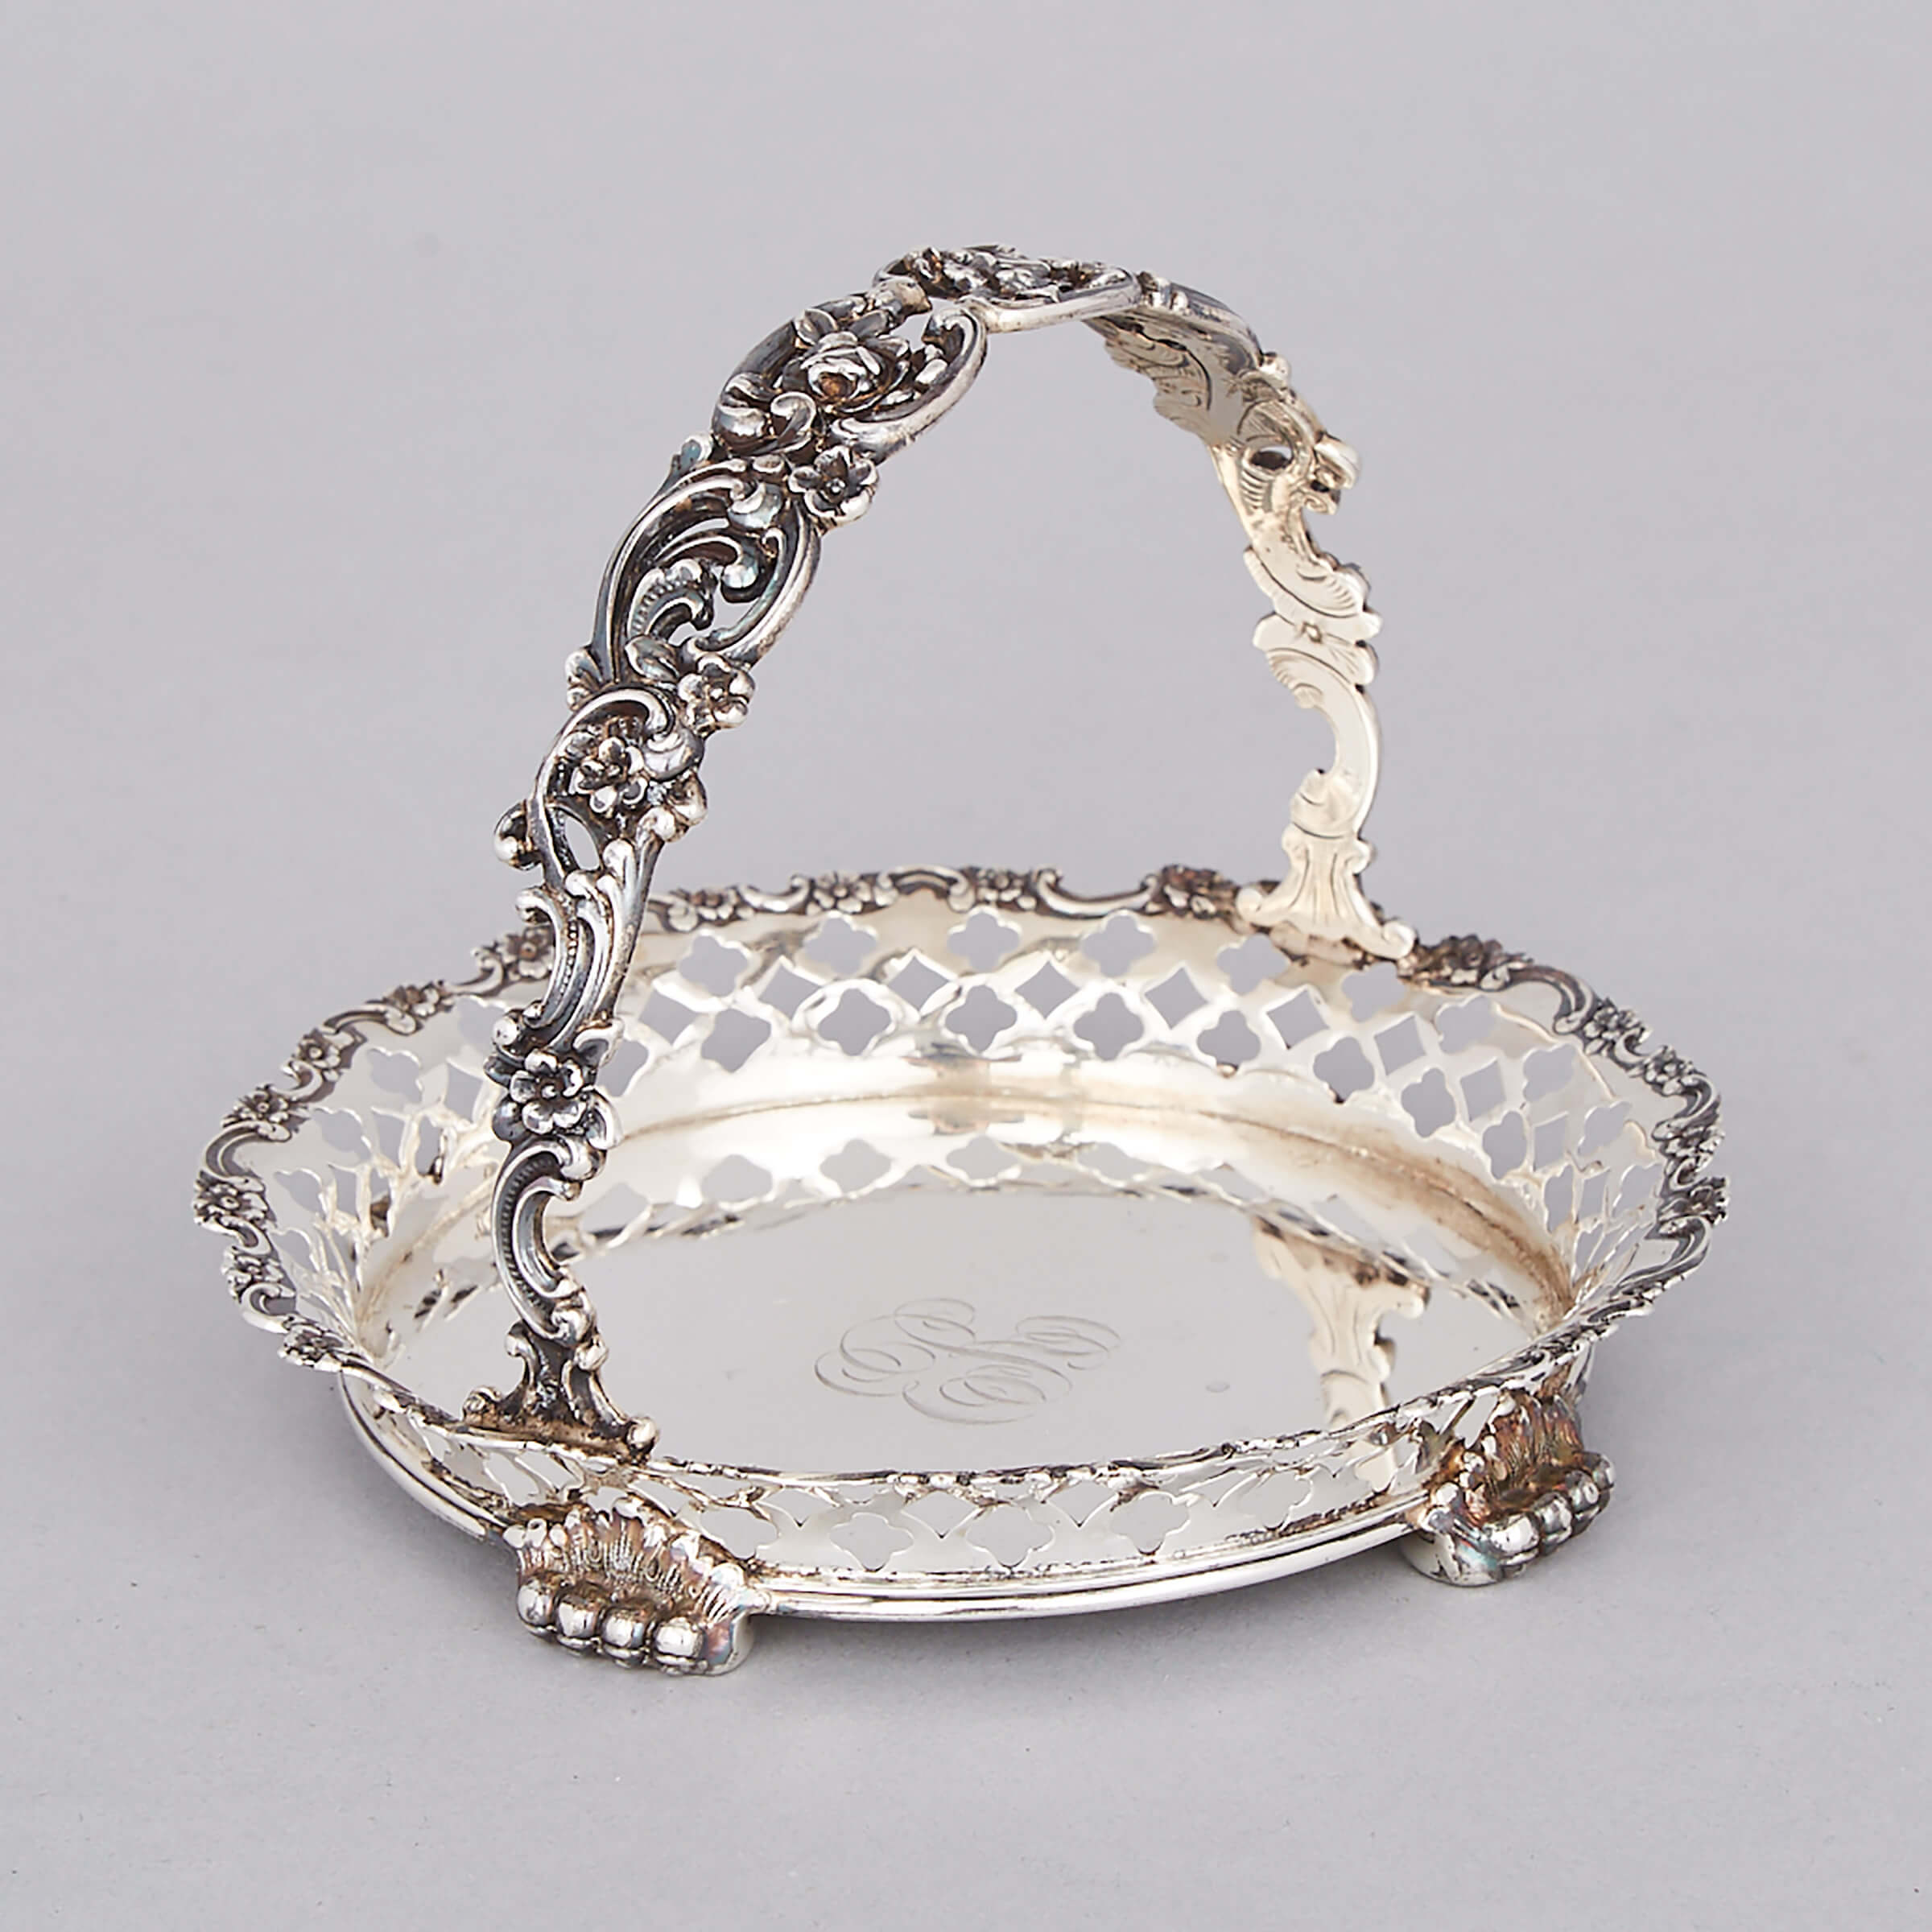 American Silver Small Circular Basket, Tiffany & Co., New York, N.Y., c.1902-07